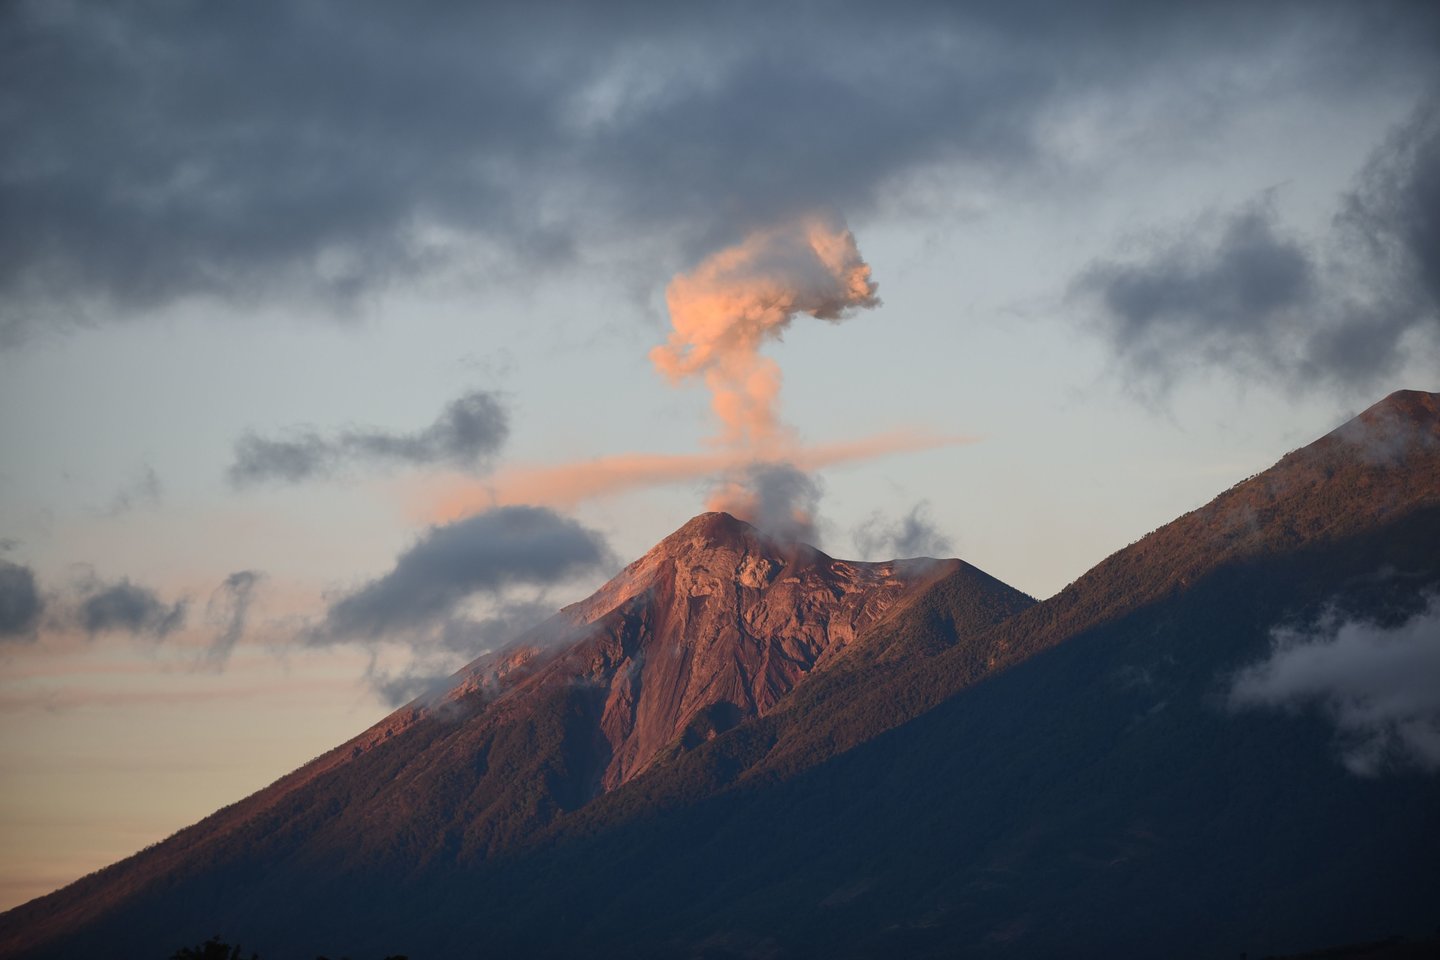 Gvatemalos tarnybos pirmadienį paskelbė aukšto lygio pavojų ir evakavo apie 4 tūkst. žmonių, prasidėjus jau penktam šiais metais Fuego ugnikalnio išsiveržimui, per kurį kalno šlaitais slinko lavos srautais ir pelenų debesys, bet jo aktyvumas greitai sumažėjo ir galiausiai liovėsi.<br>AFP/Scanpix nuotr.